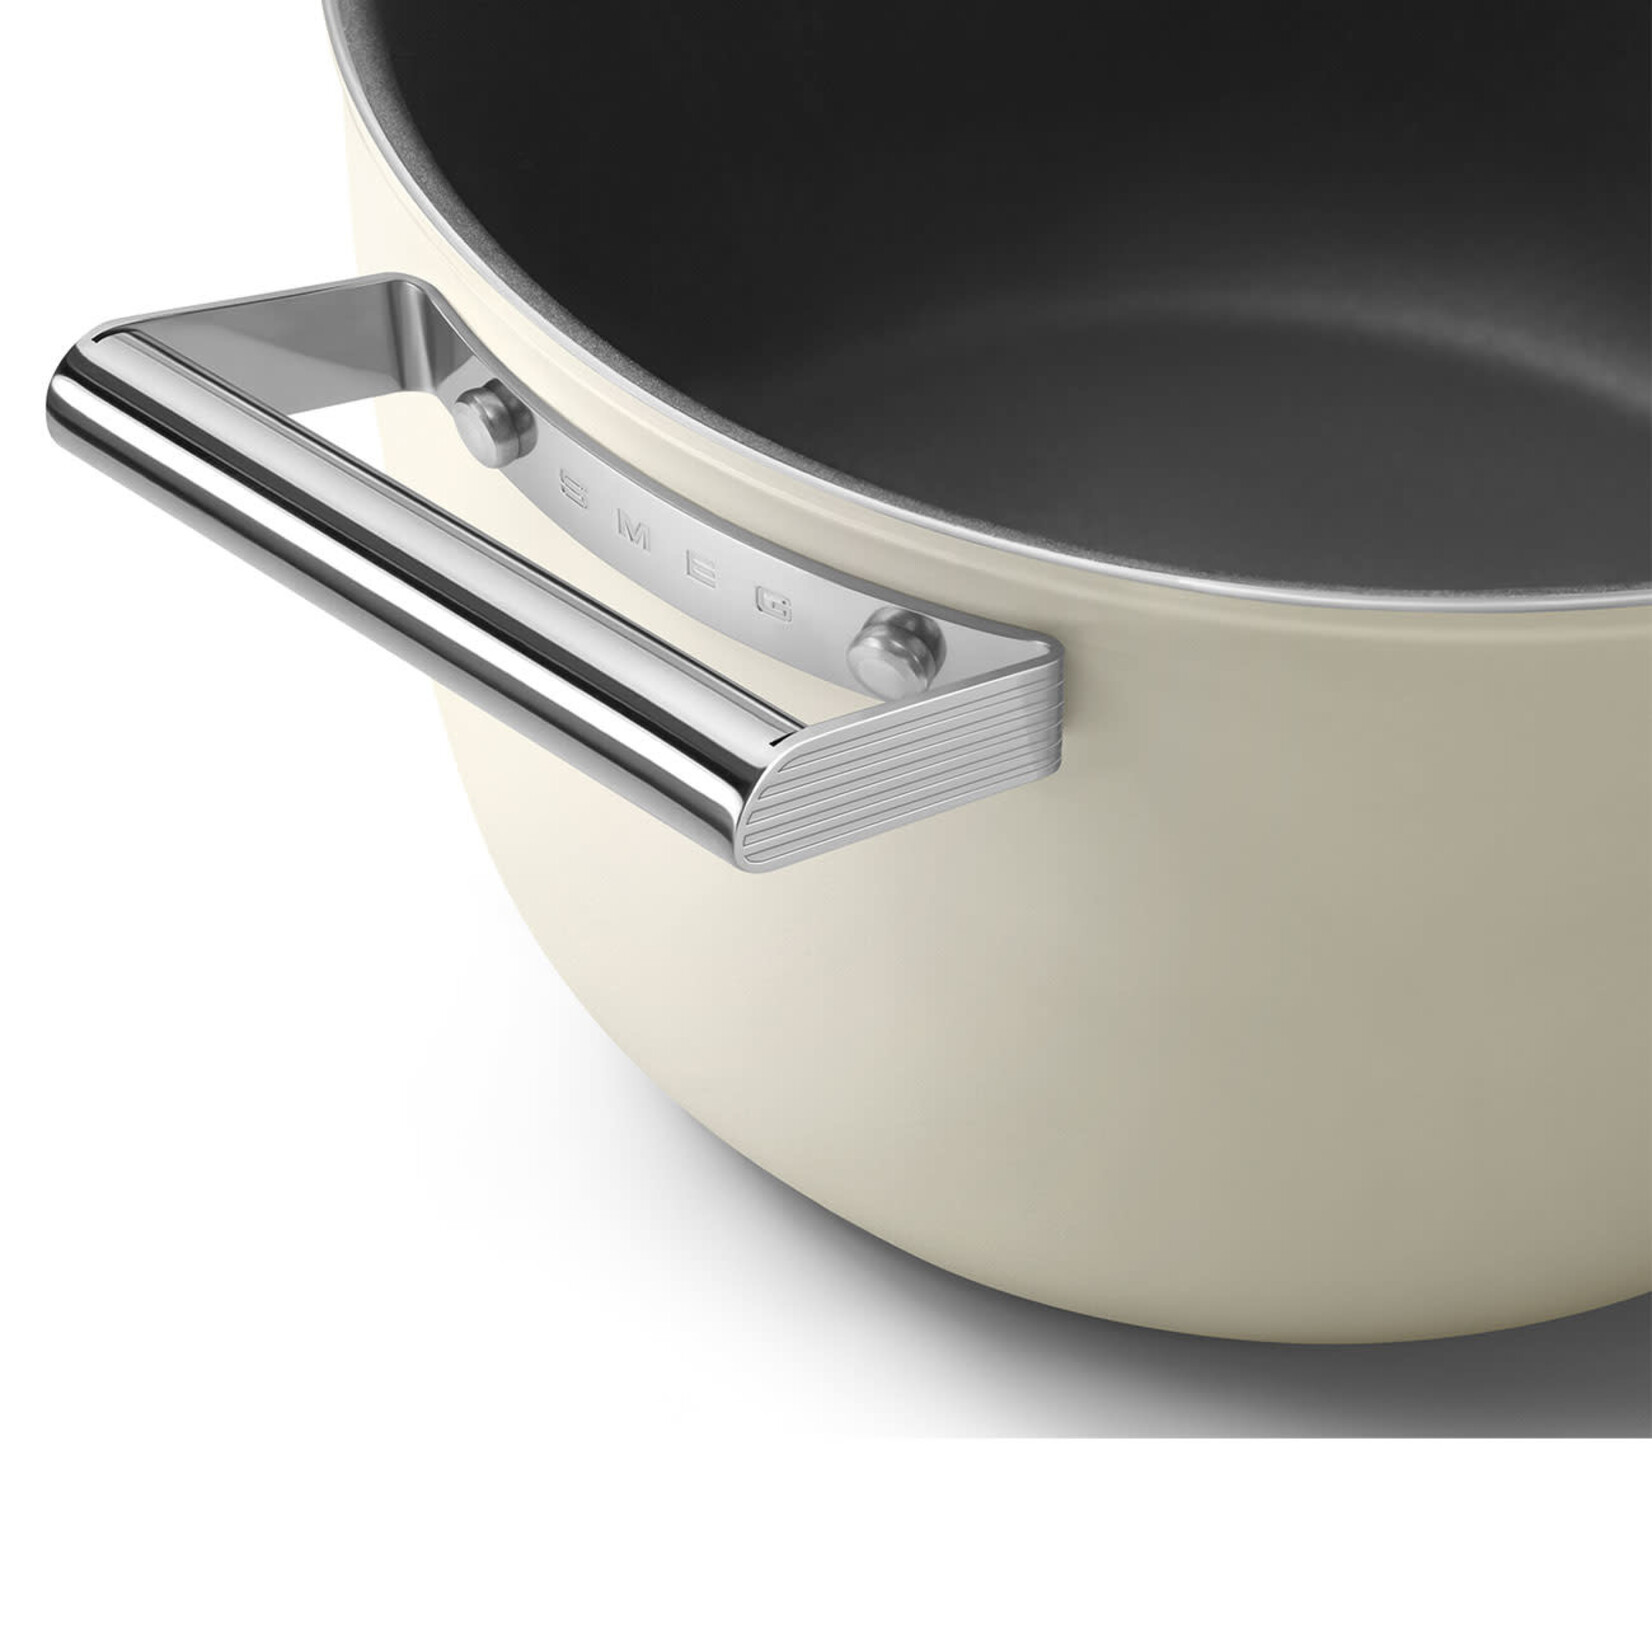 SMEG SMEG Non-stick Casserole Dish - 8 Quart with 10" Lid